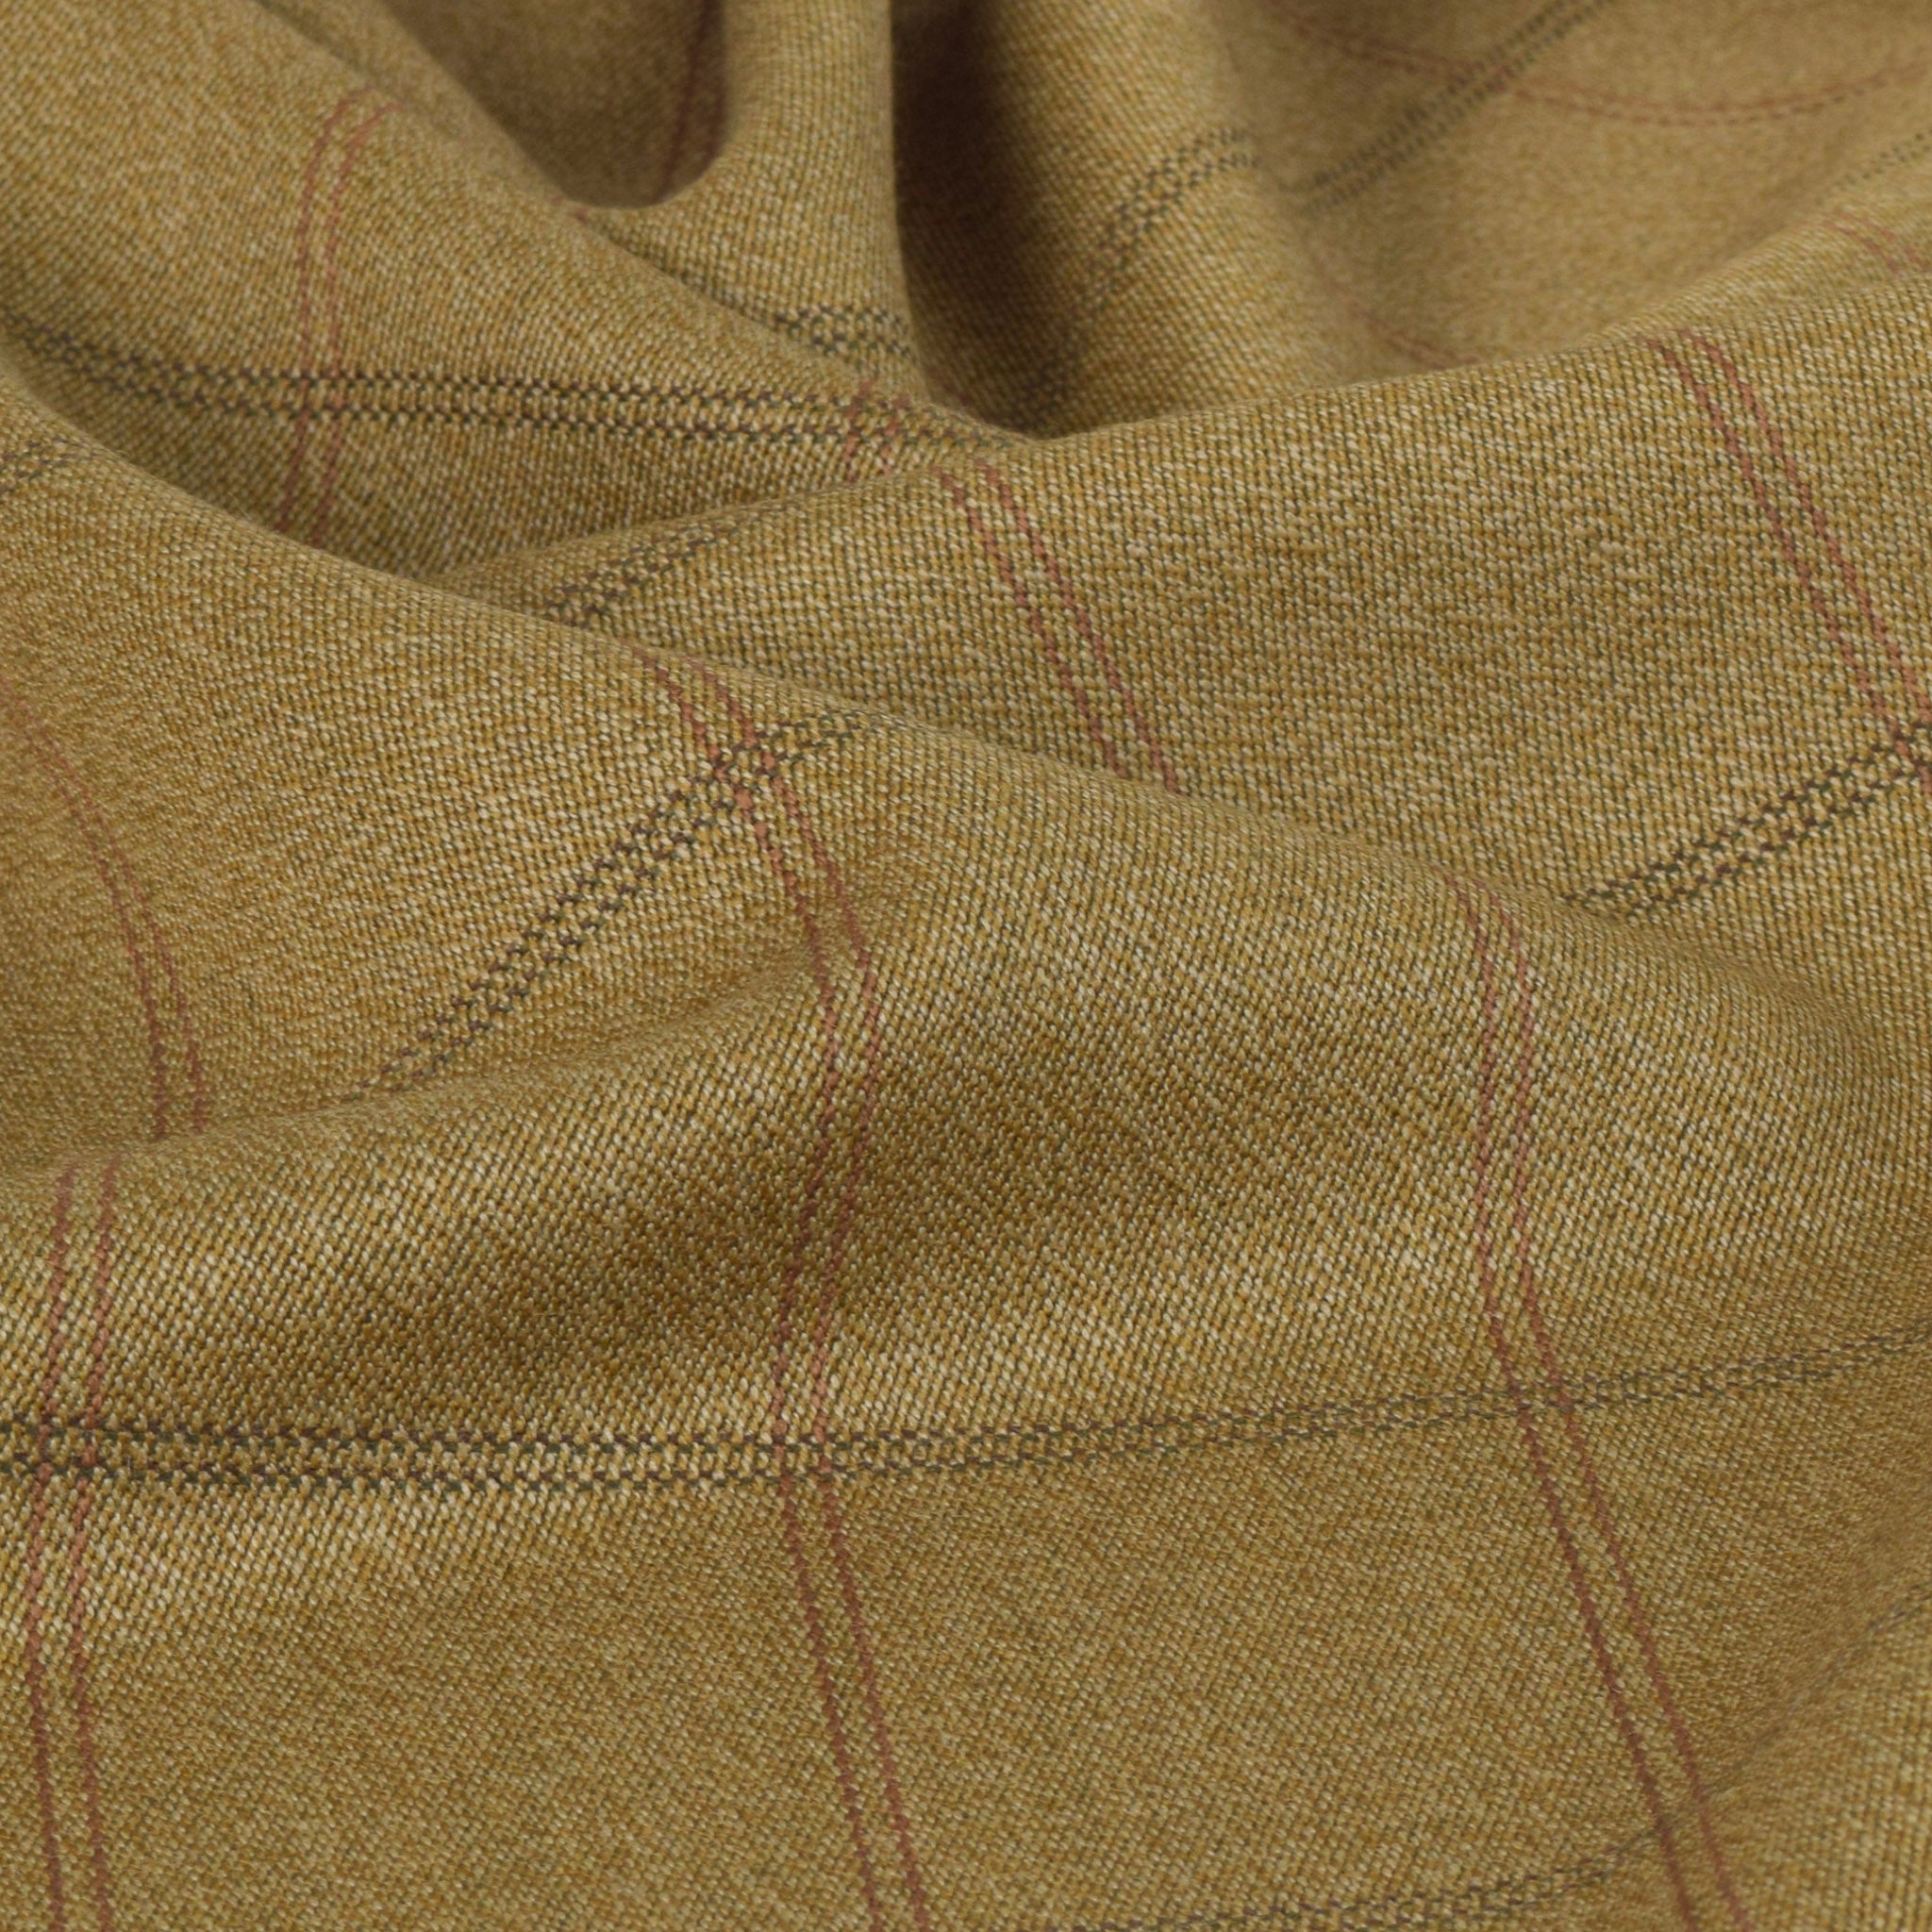 Khaki Beige Jacket Fabric 5302 - Fabrics4Fashion